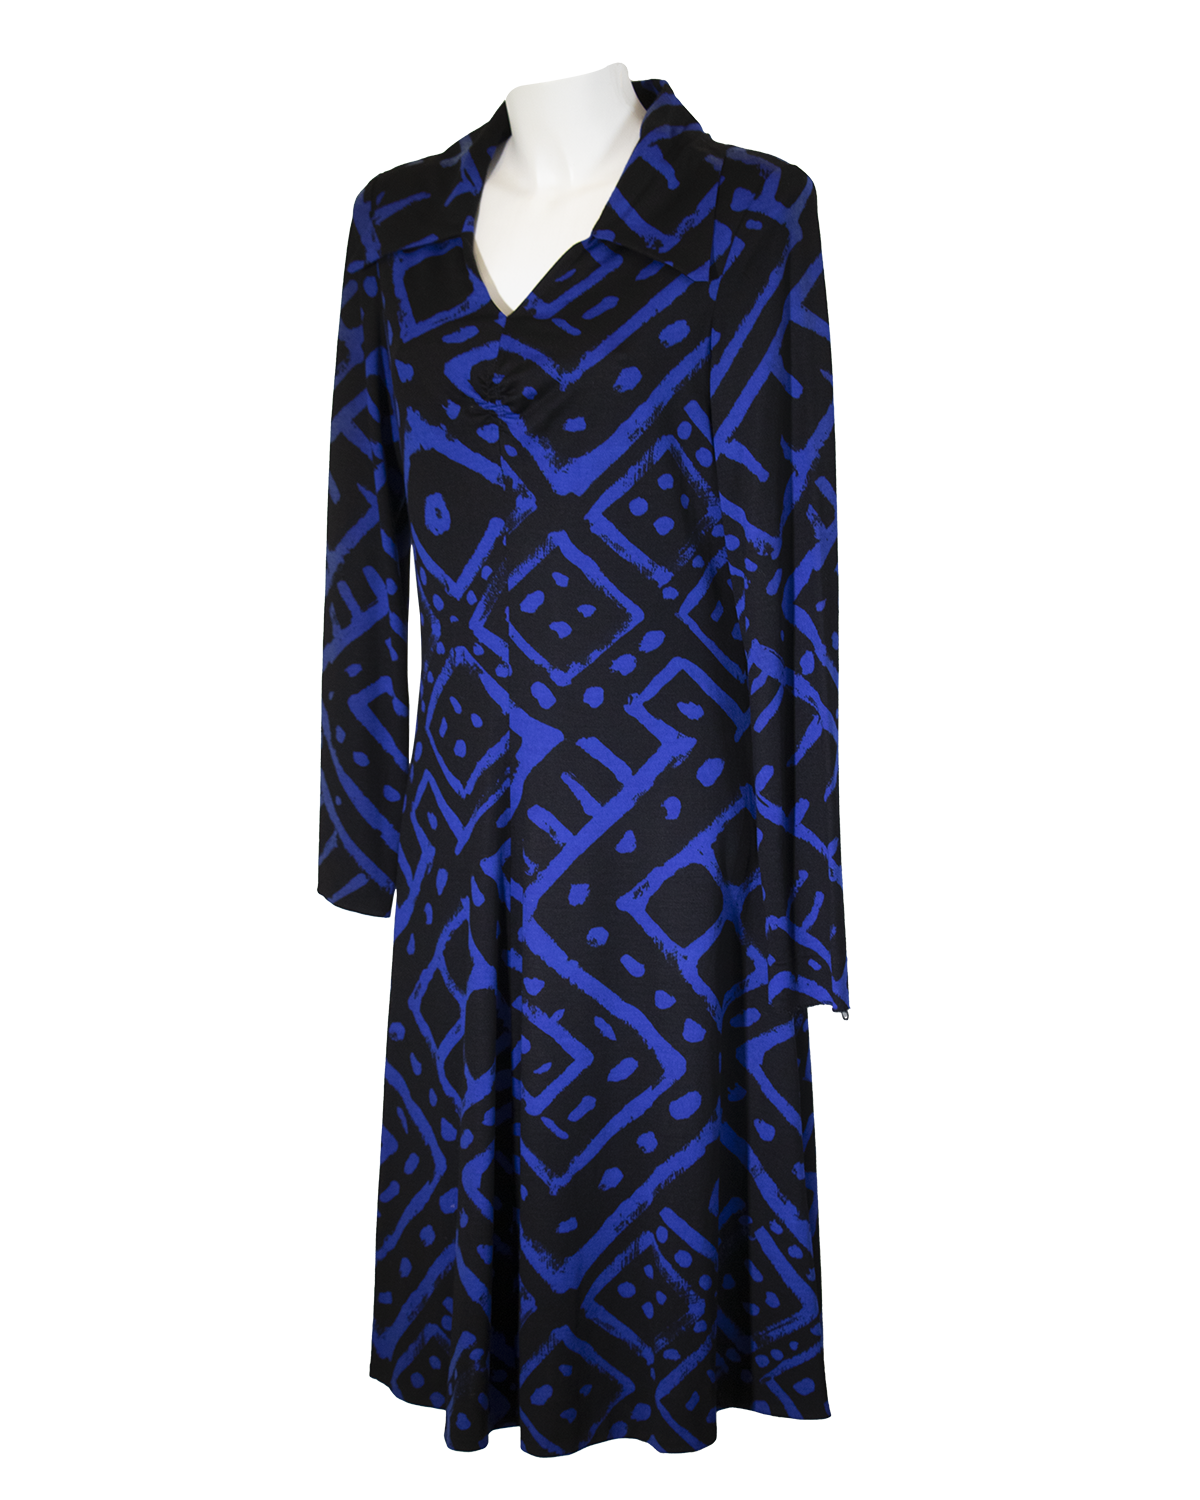 Ken Scott - Blue Dress from 1971